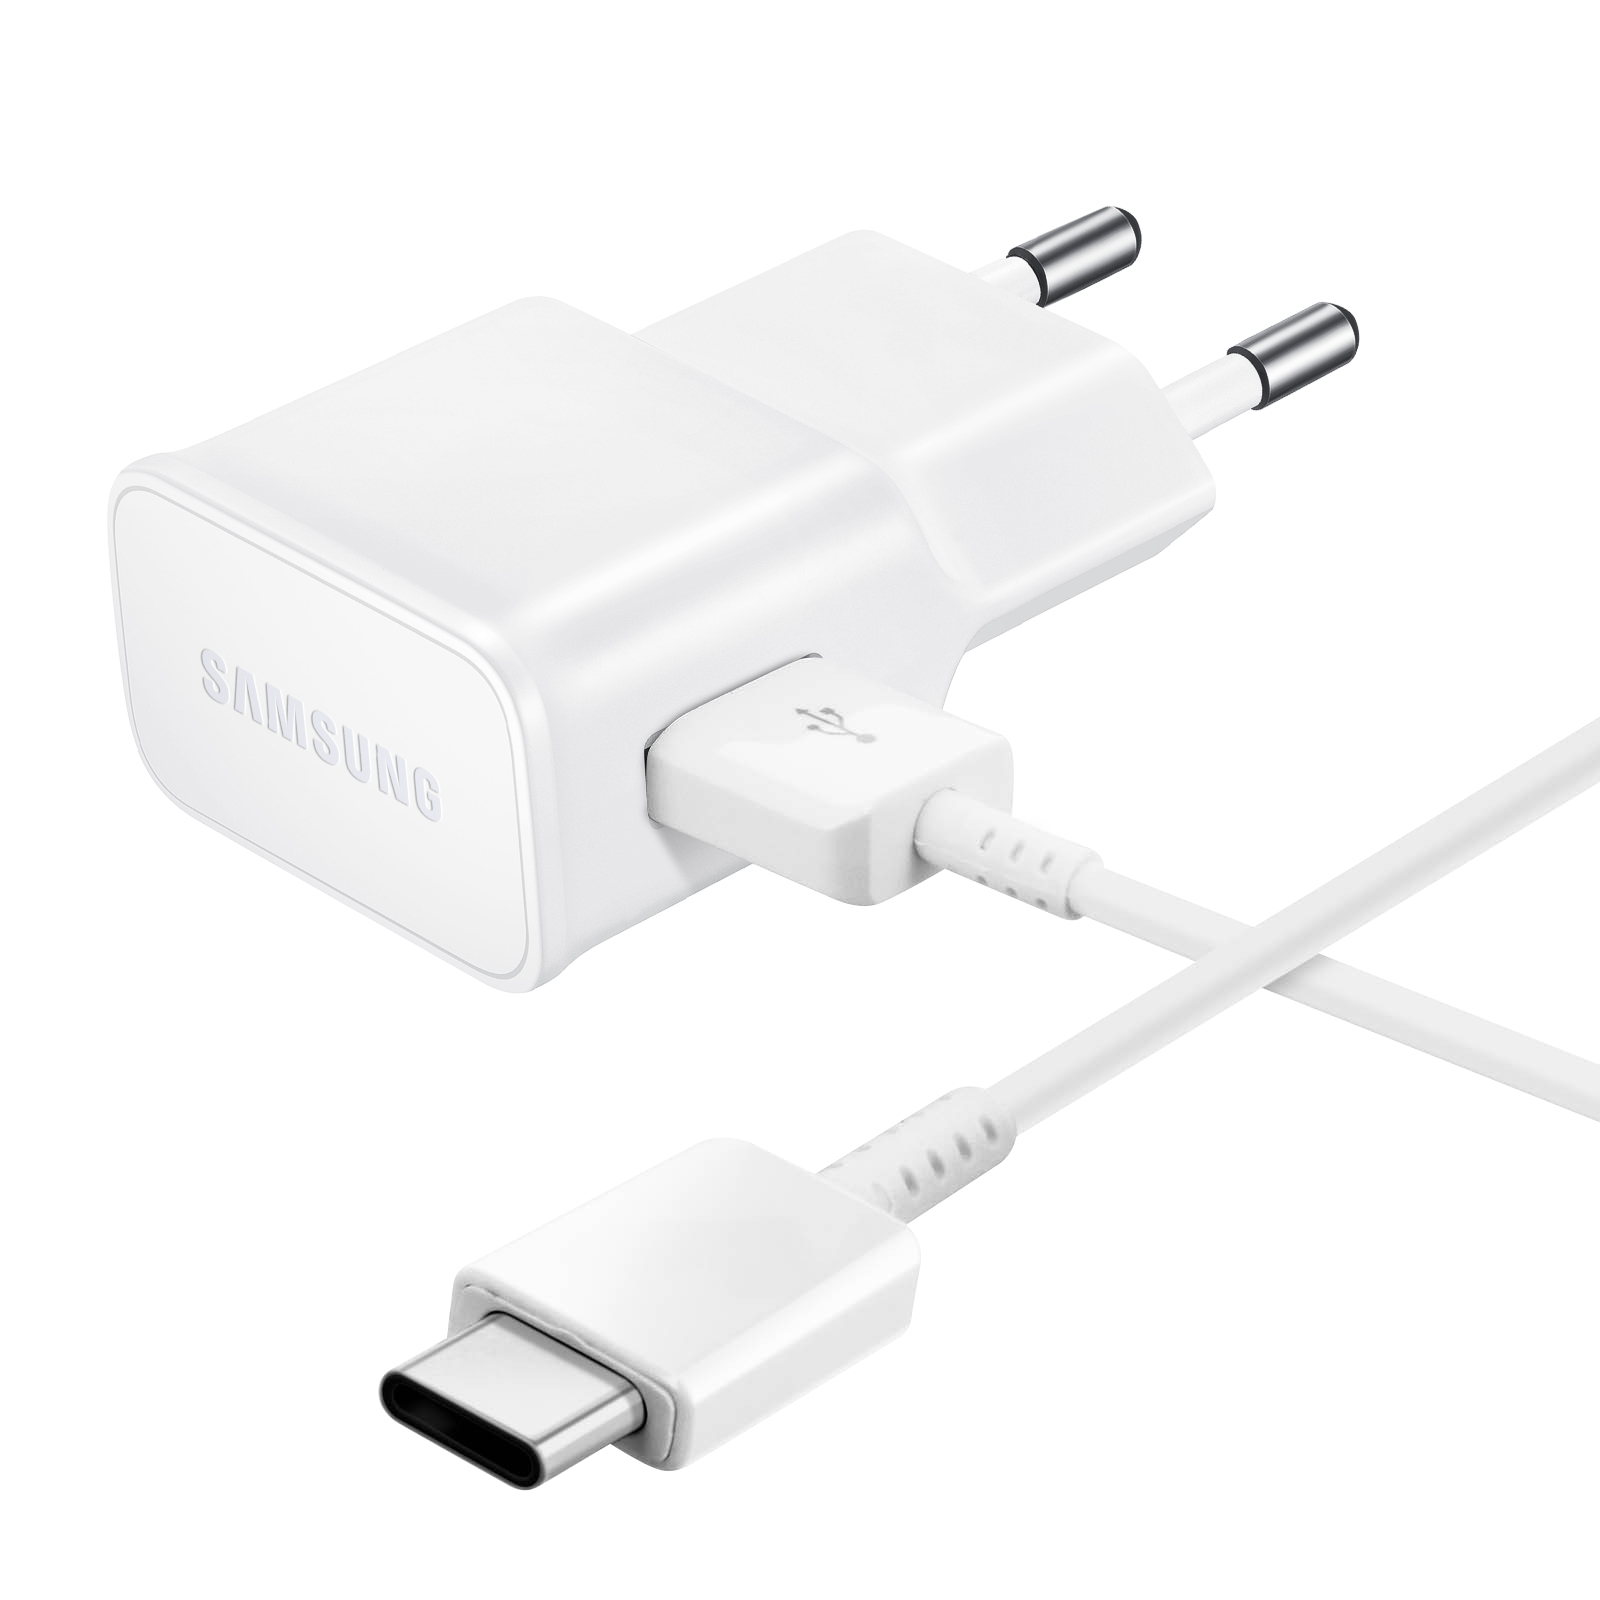 SAMSUNG Netzteil, 2A USB Samsung, Weiß Netzteile Wand-Ladegerät